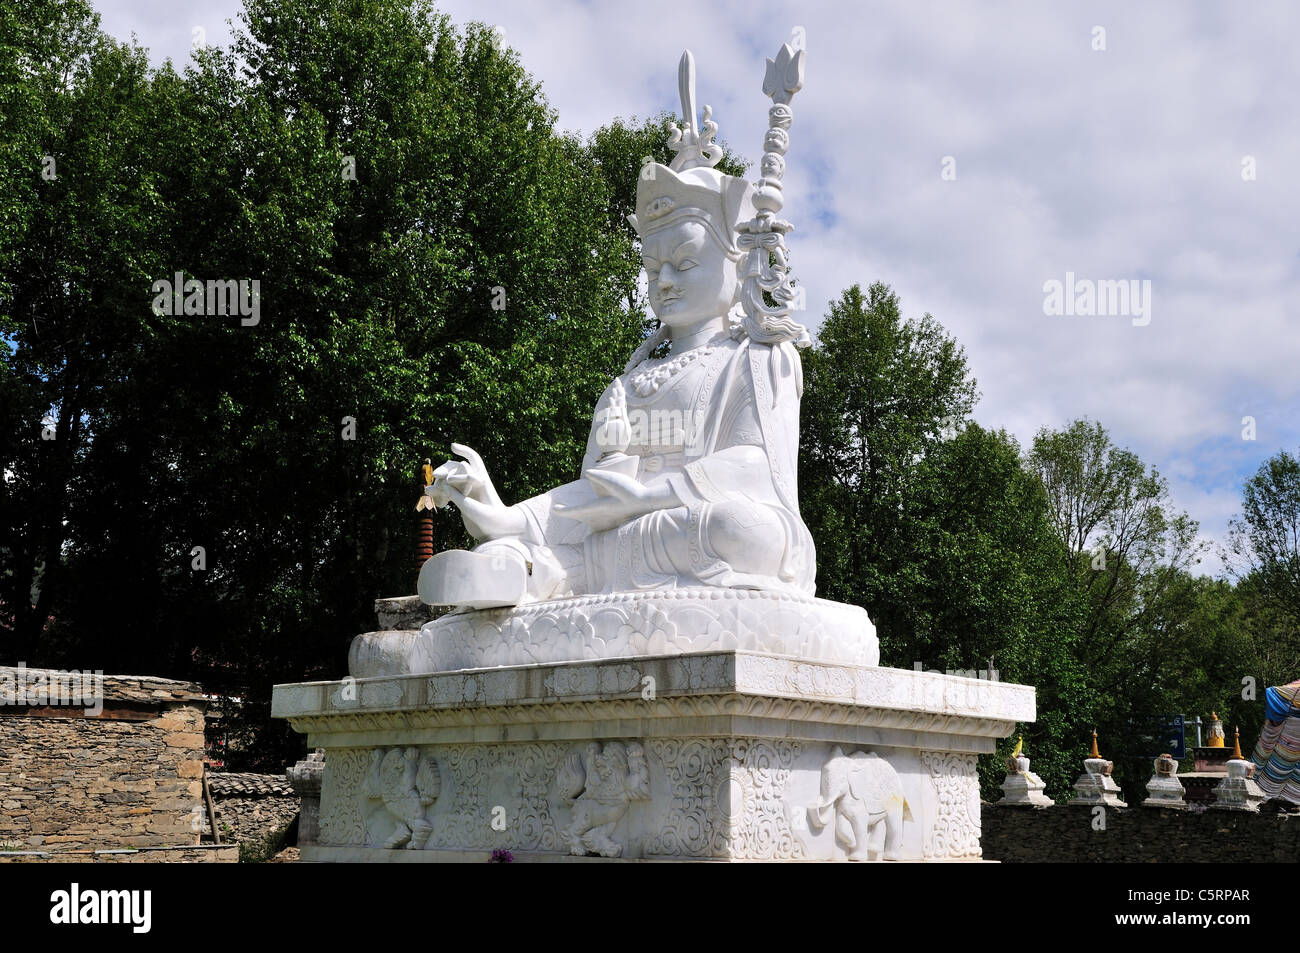 Eine weiße Marmorstatue des Buddha. Danba, Sichuan, China. Stockfoto